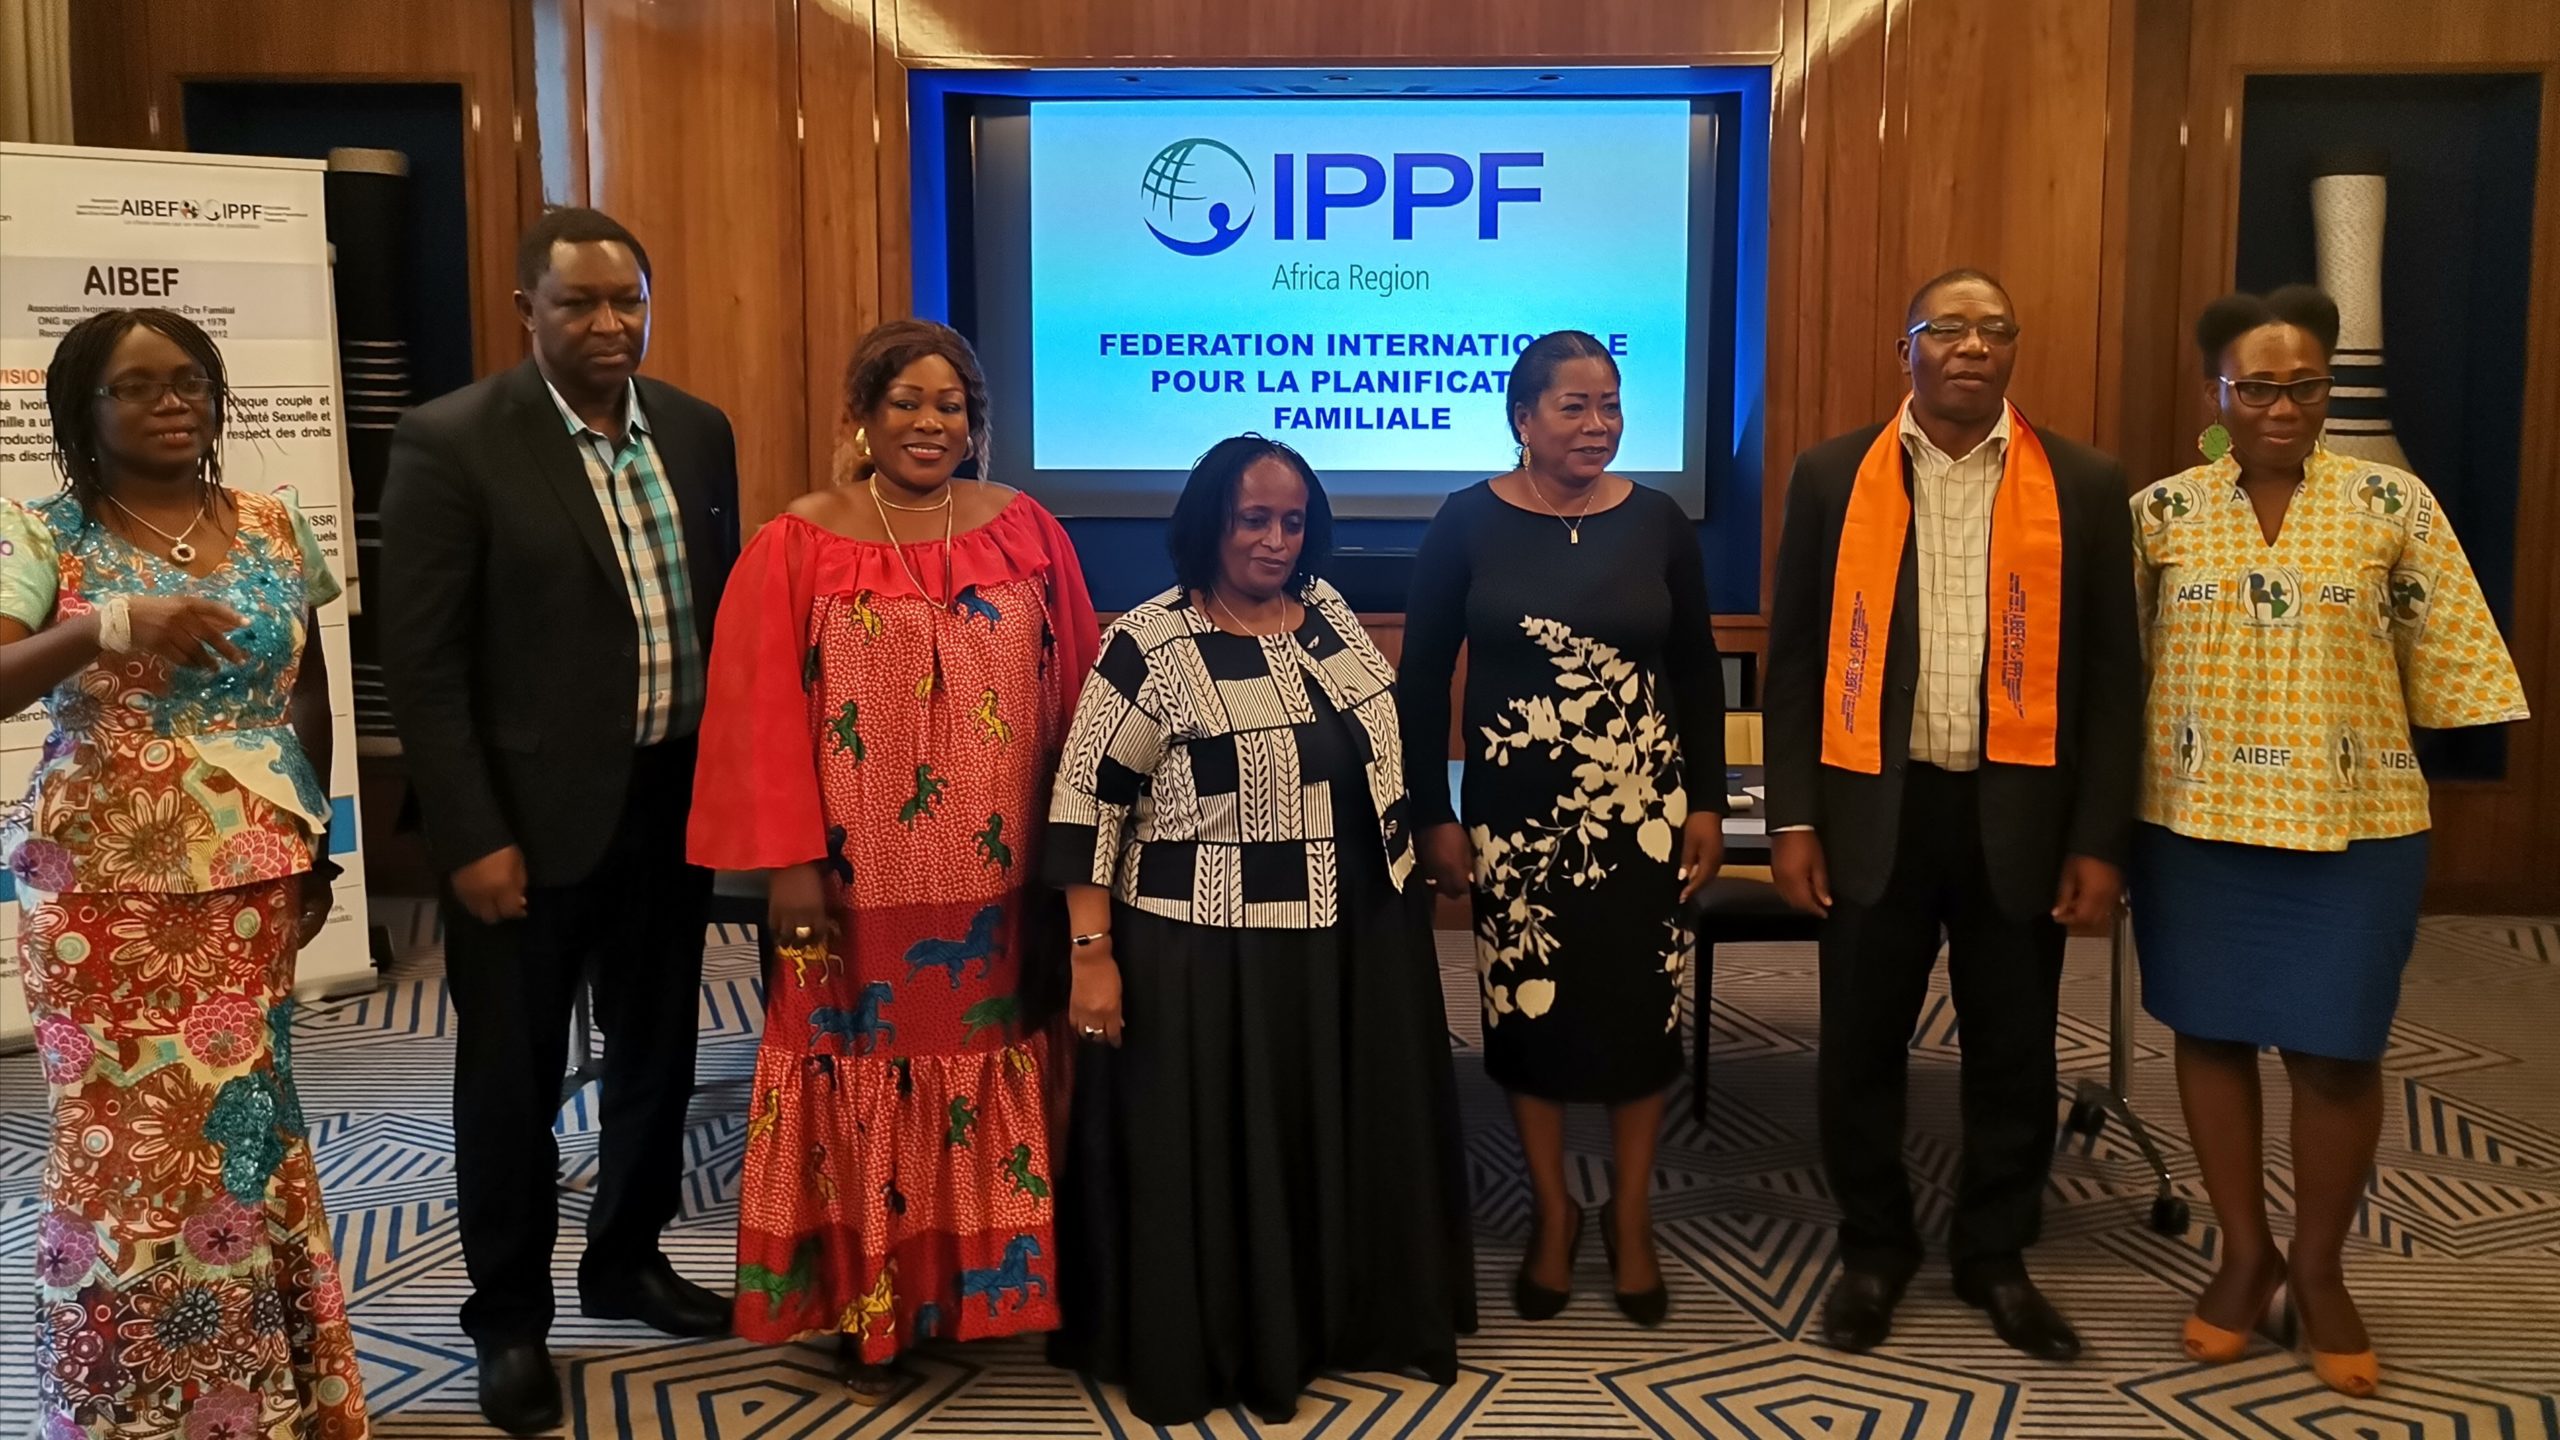 Ancrage de l’IPPF en l’Afrique de l’Ouest et du Centre : les autorités ivoiriennes donnent leur accord pour l’ouverture d’un bureau sous régional de l’IPPF en Côte d’Ivoire.